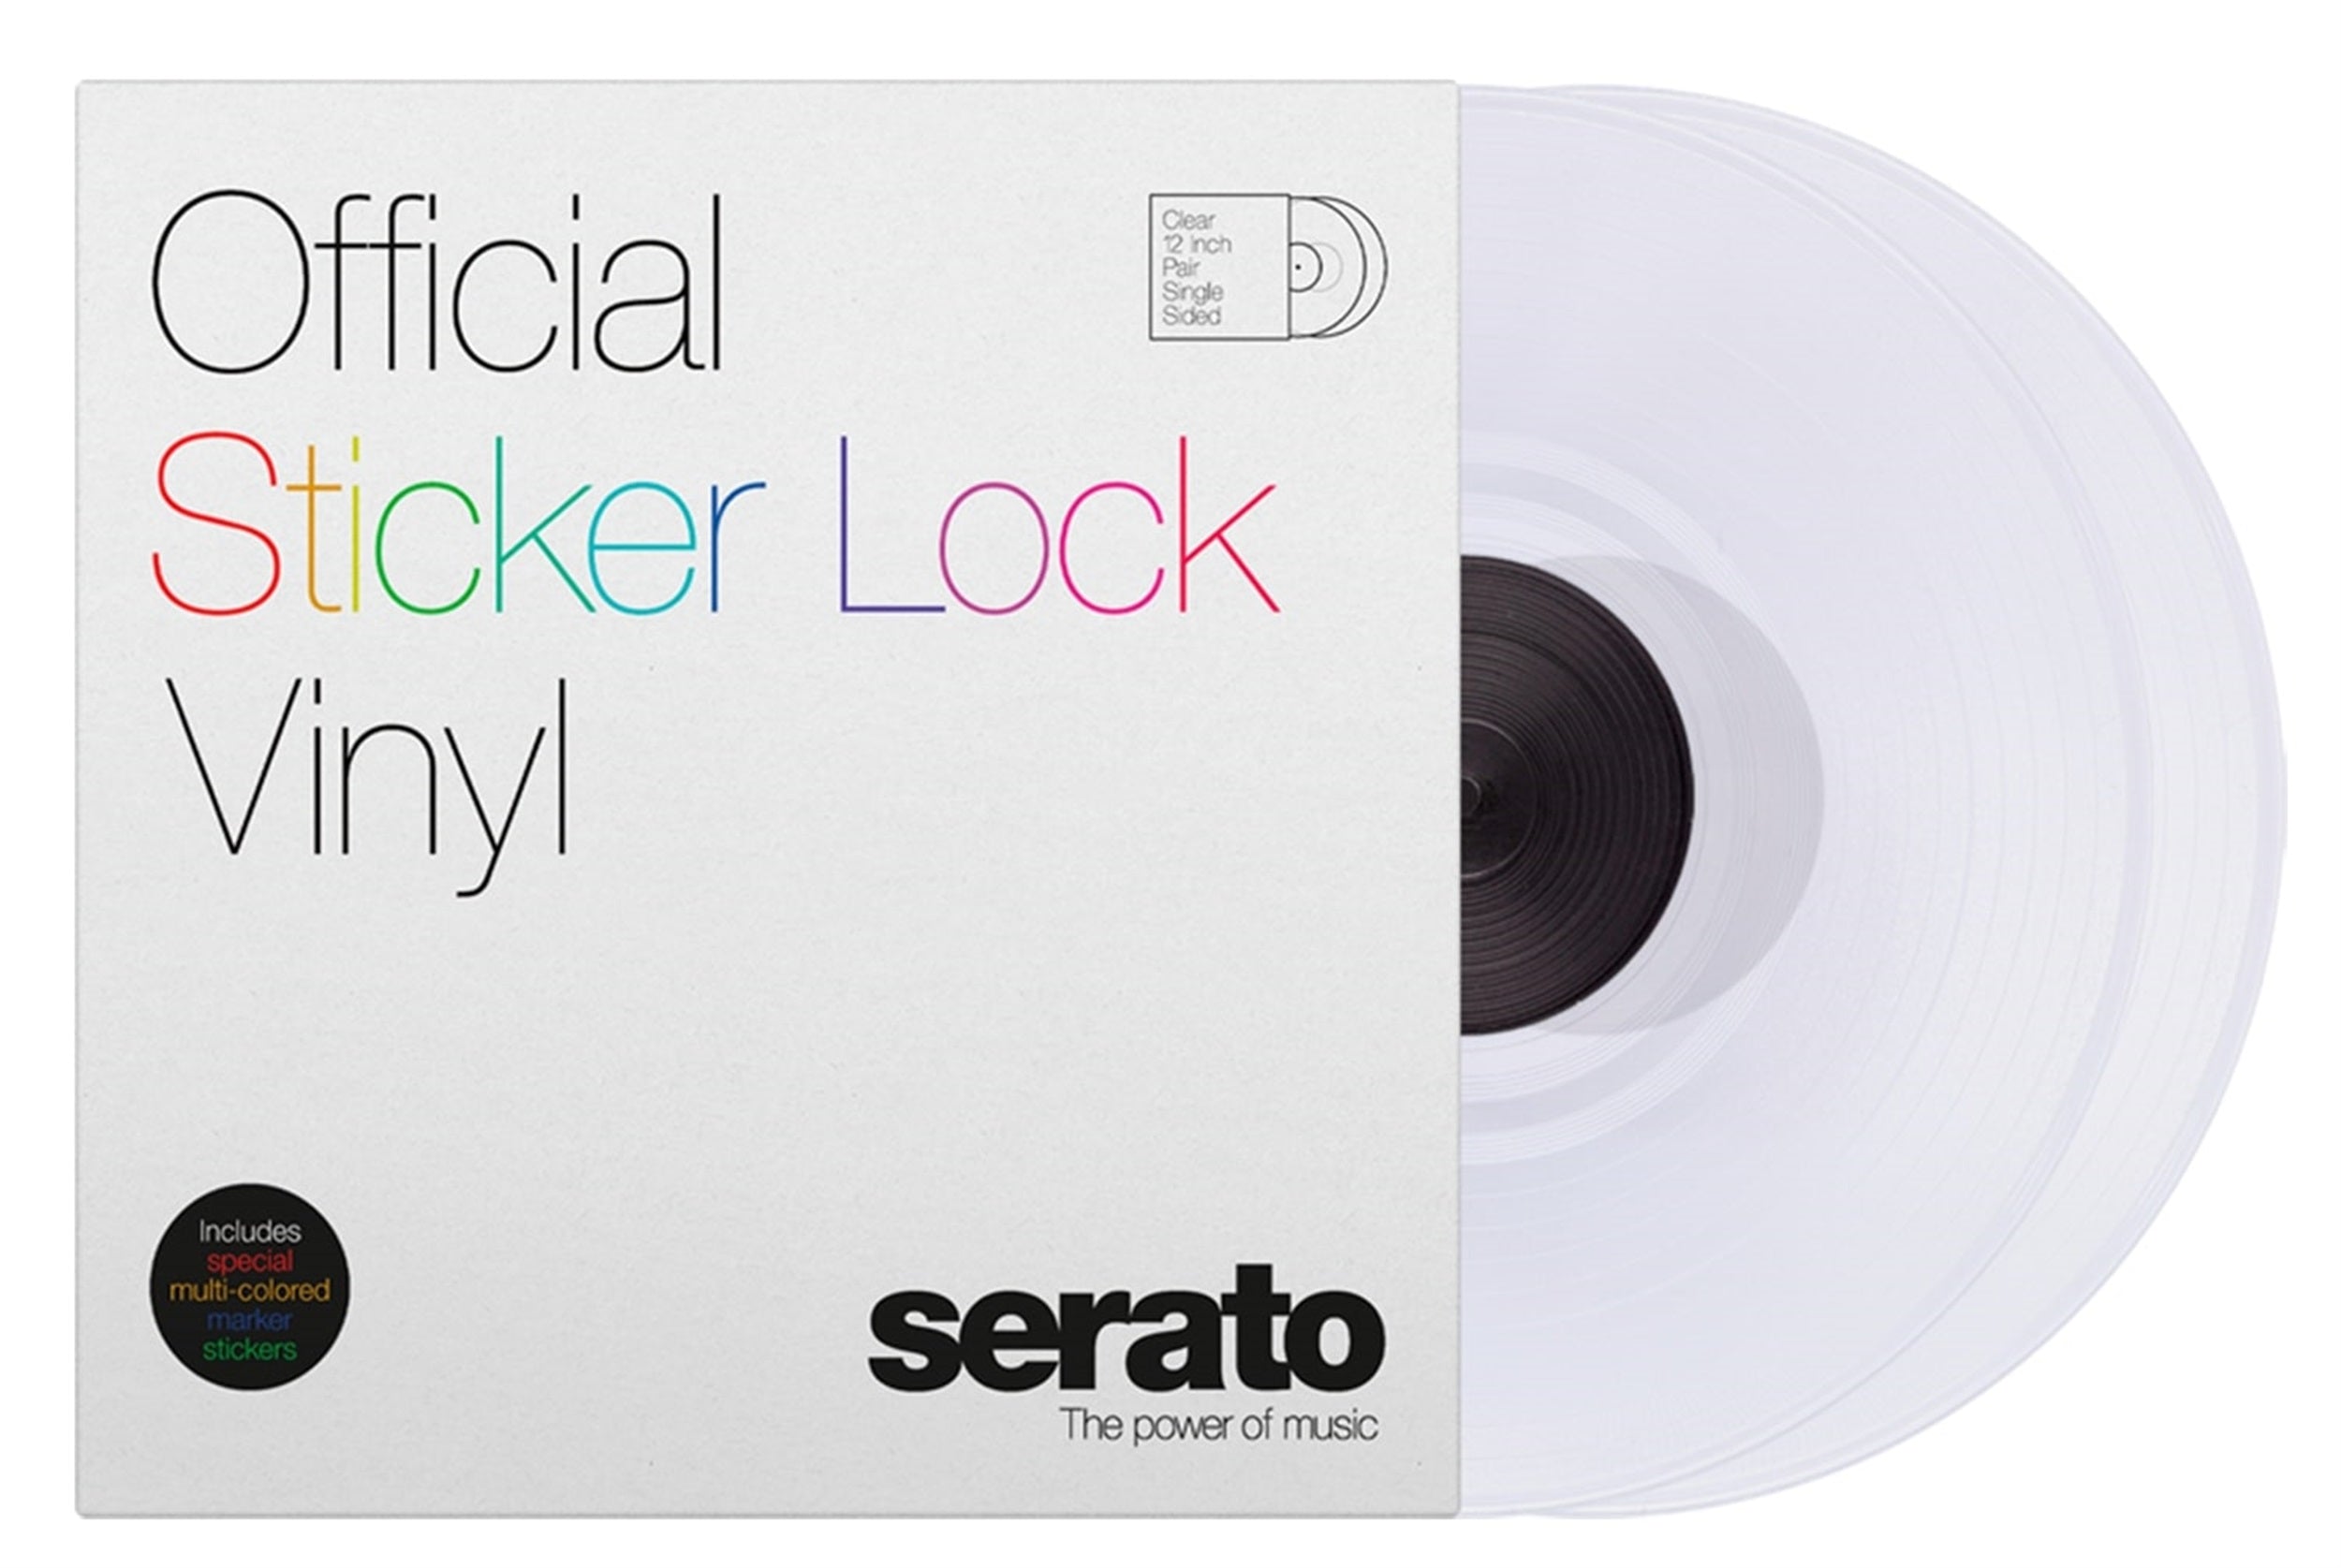 B-Stock: Serato SCV-PS-SL-BM Sticker Lock 12" Control Vinyl pressing for Serato DJ - Pair Serato